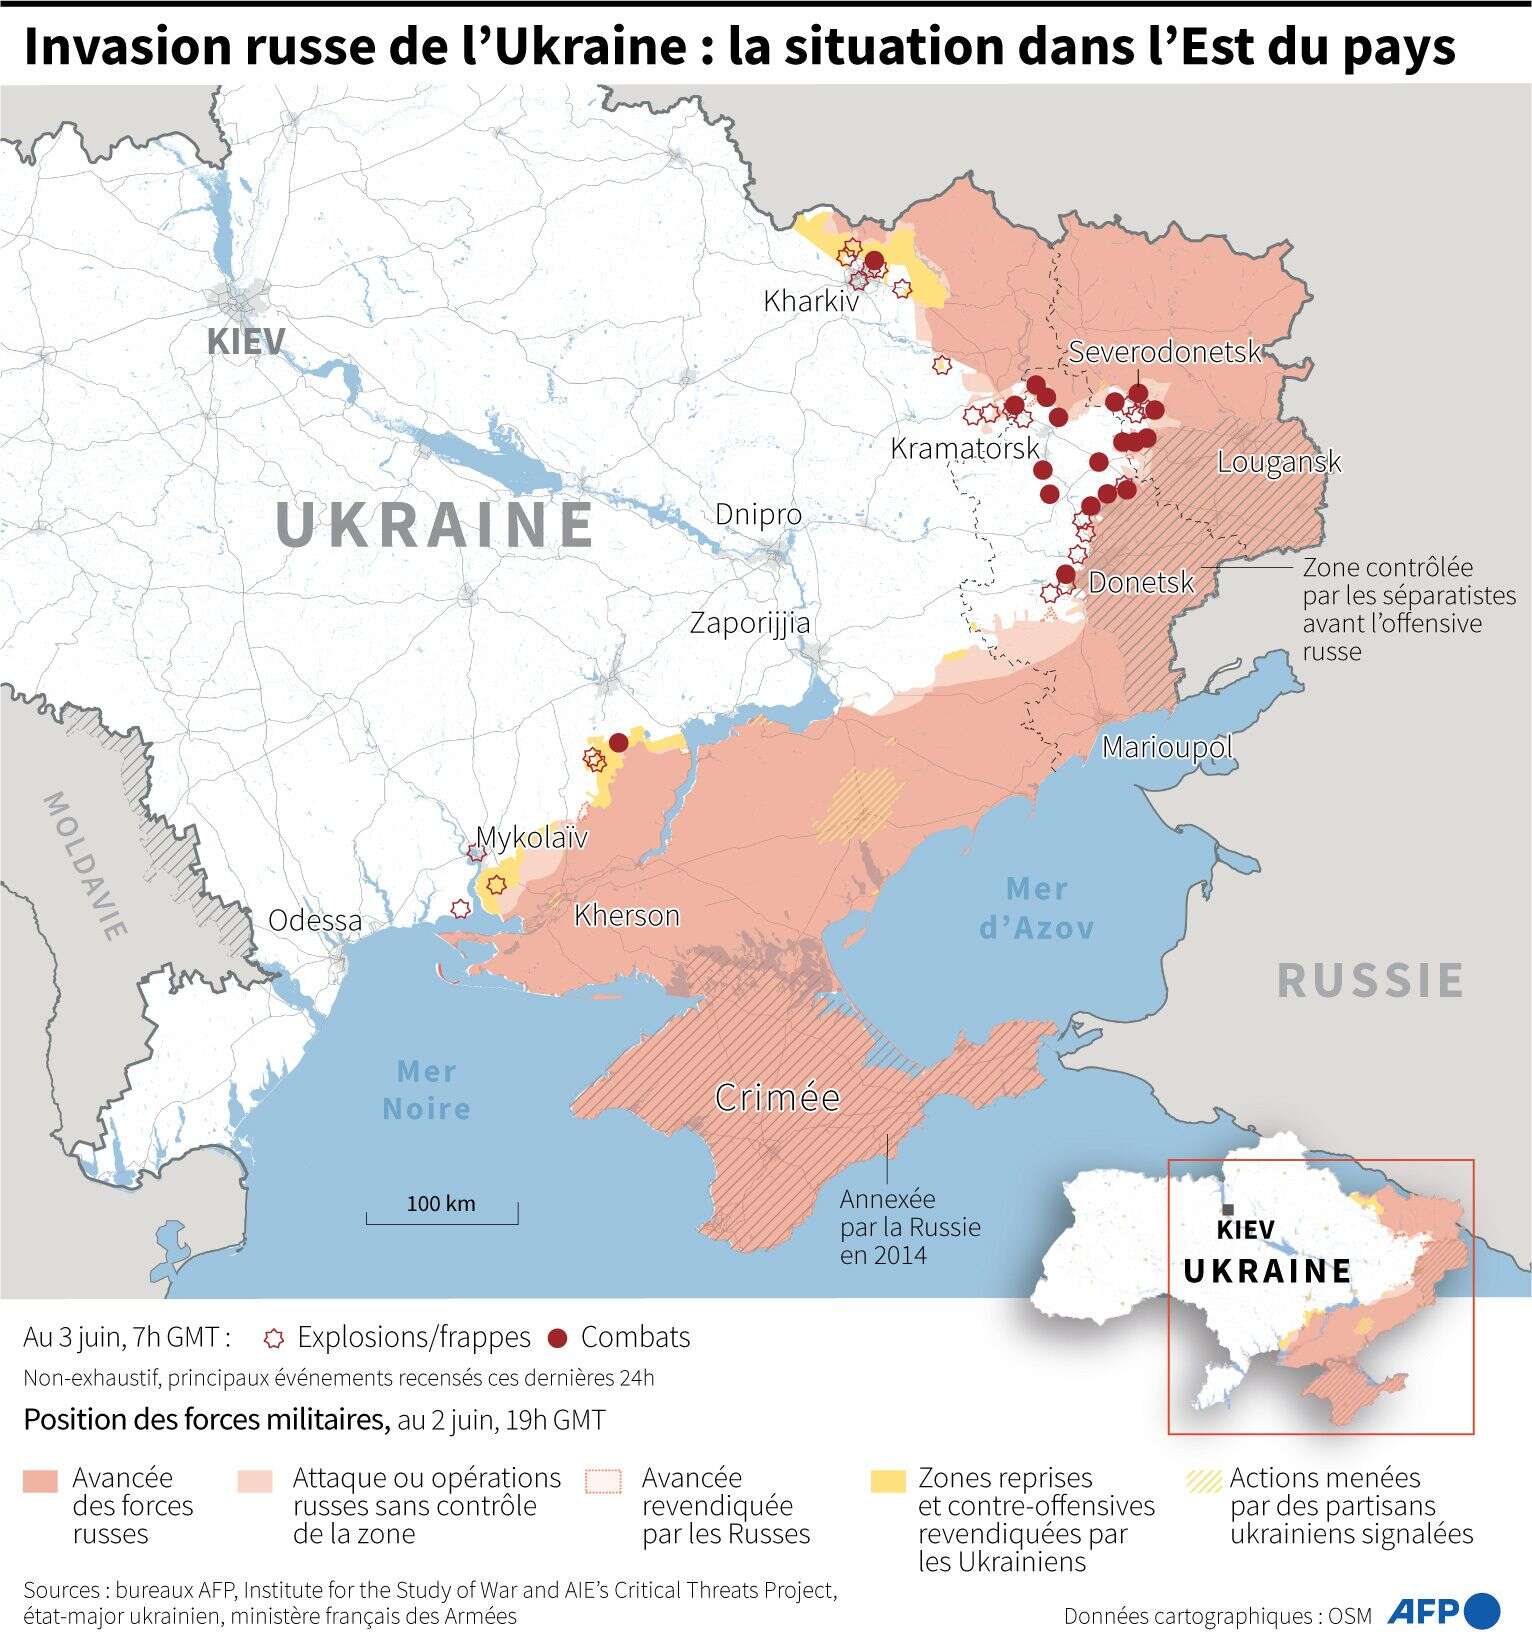 Invasion russe de l'Ukraine: la situation dans l'est du pays au 3 juin 2022